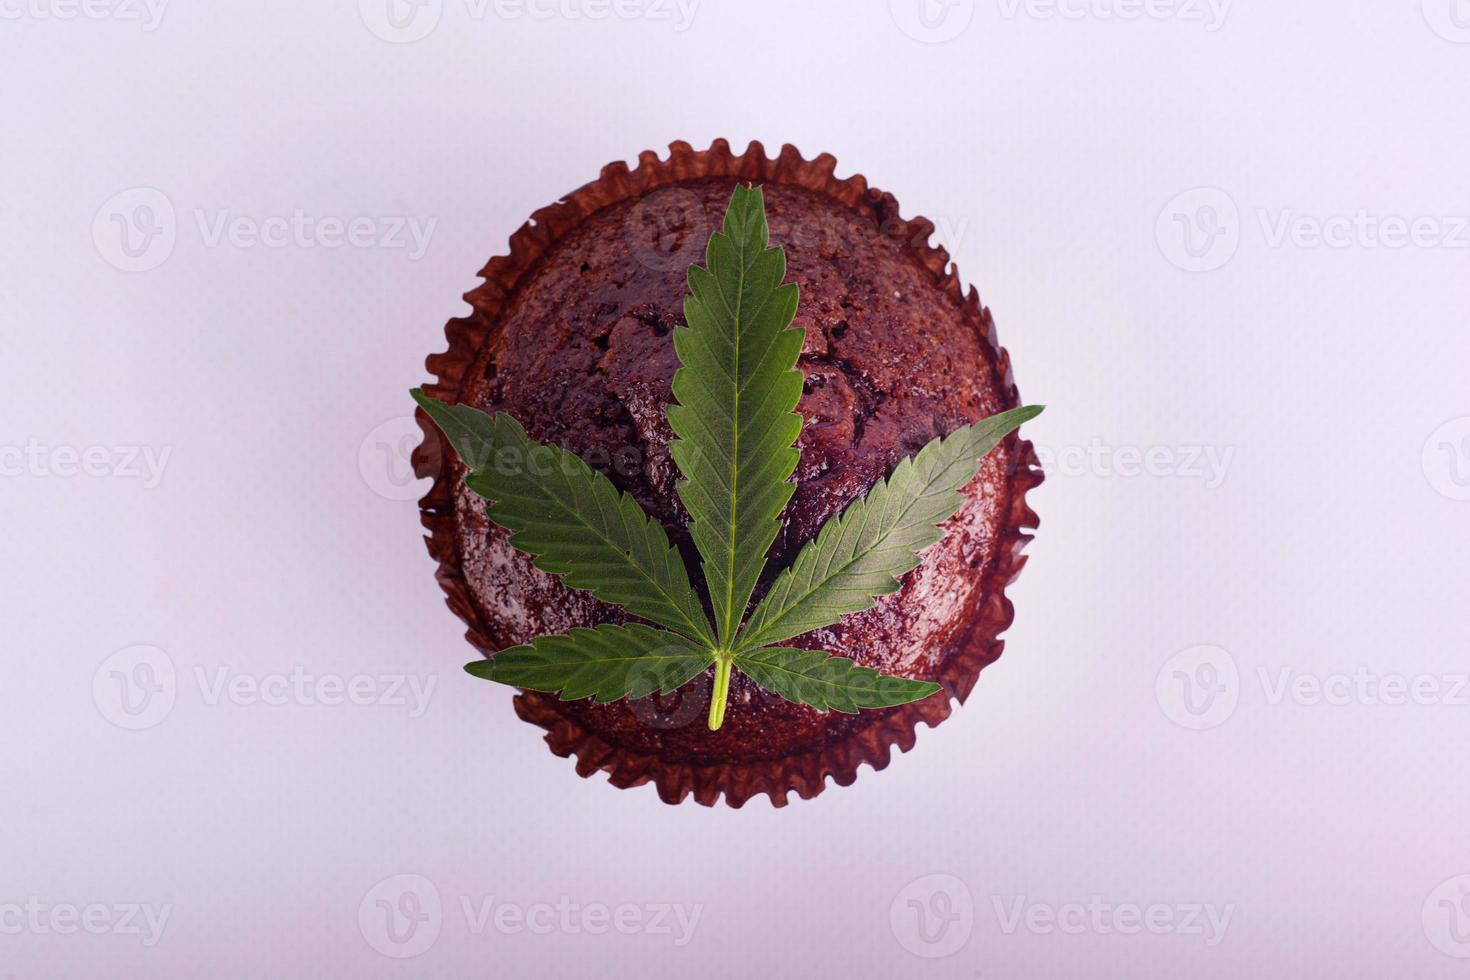 muffin al cioccolato e foglia di marijuana verde foto